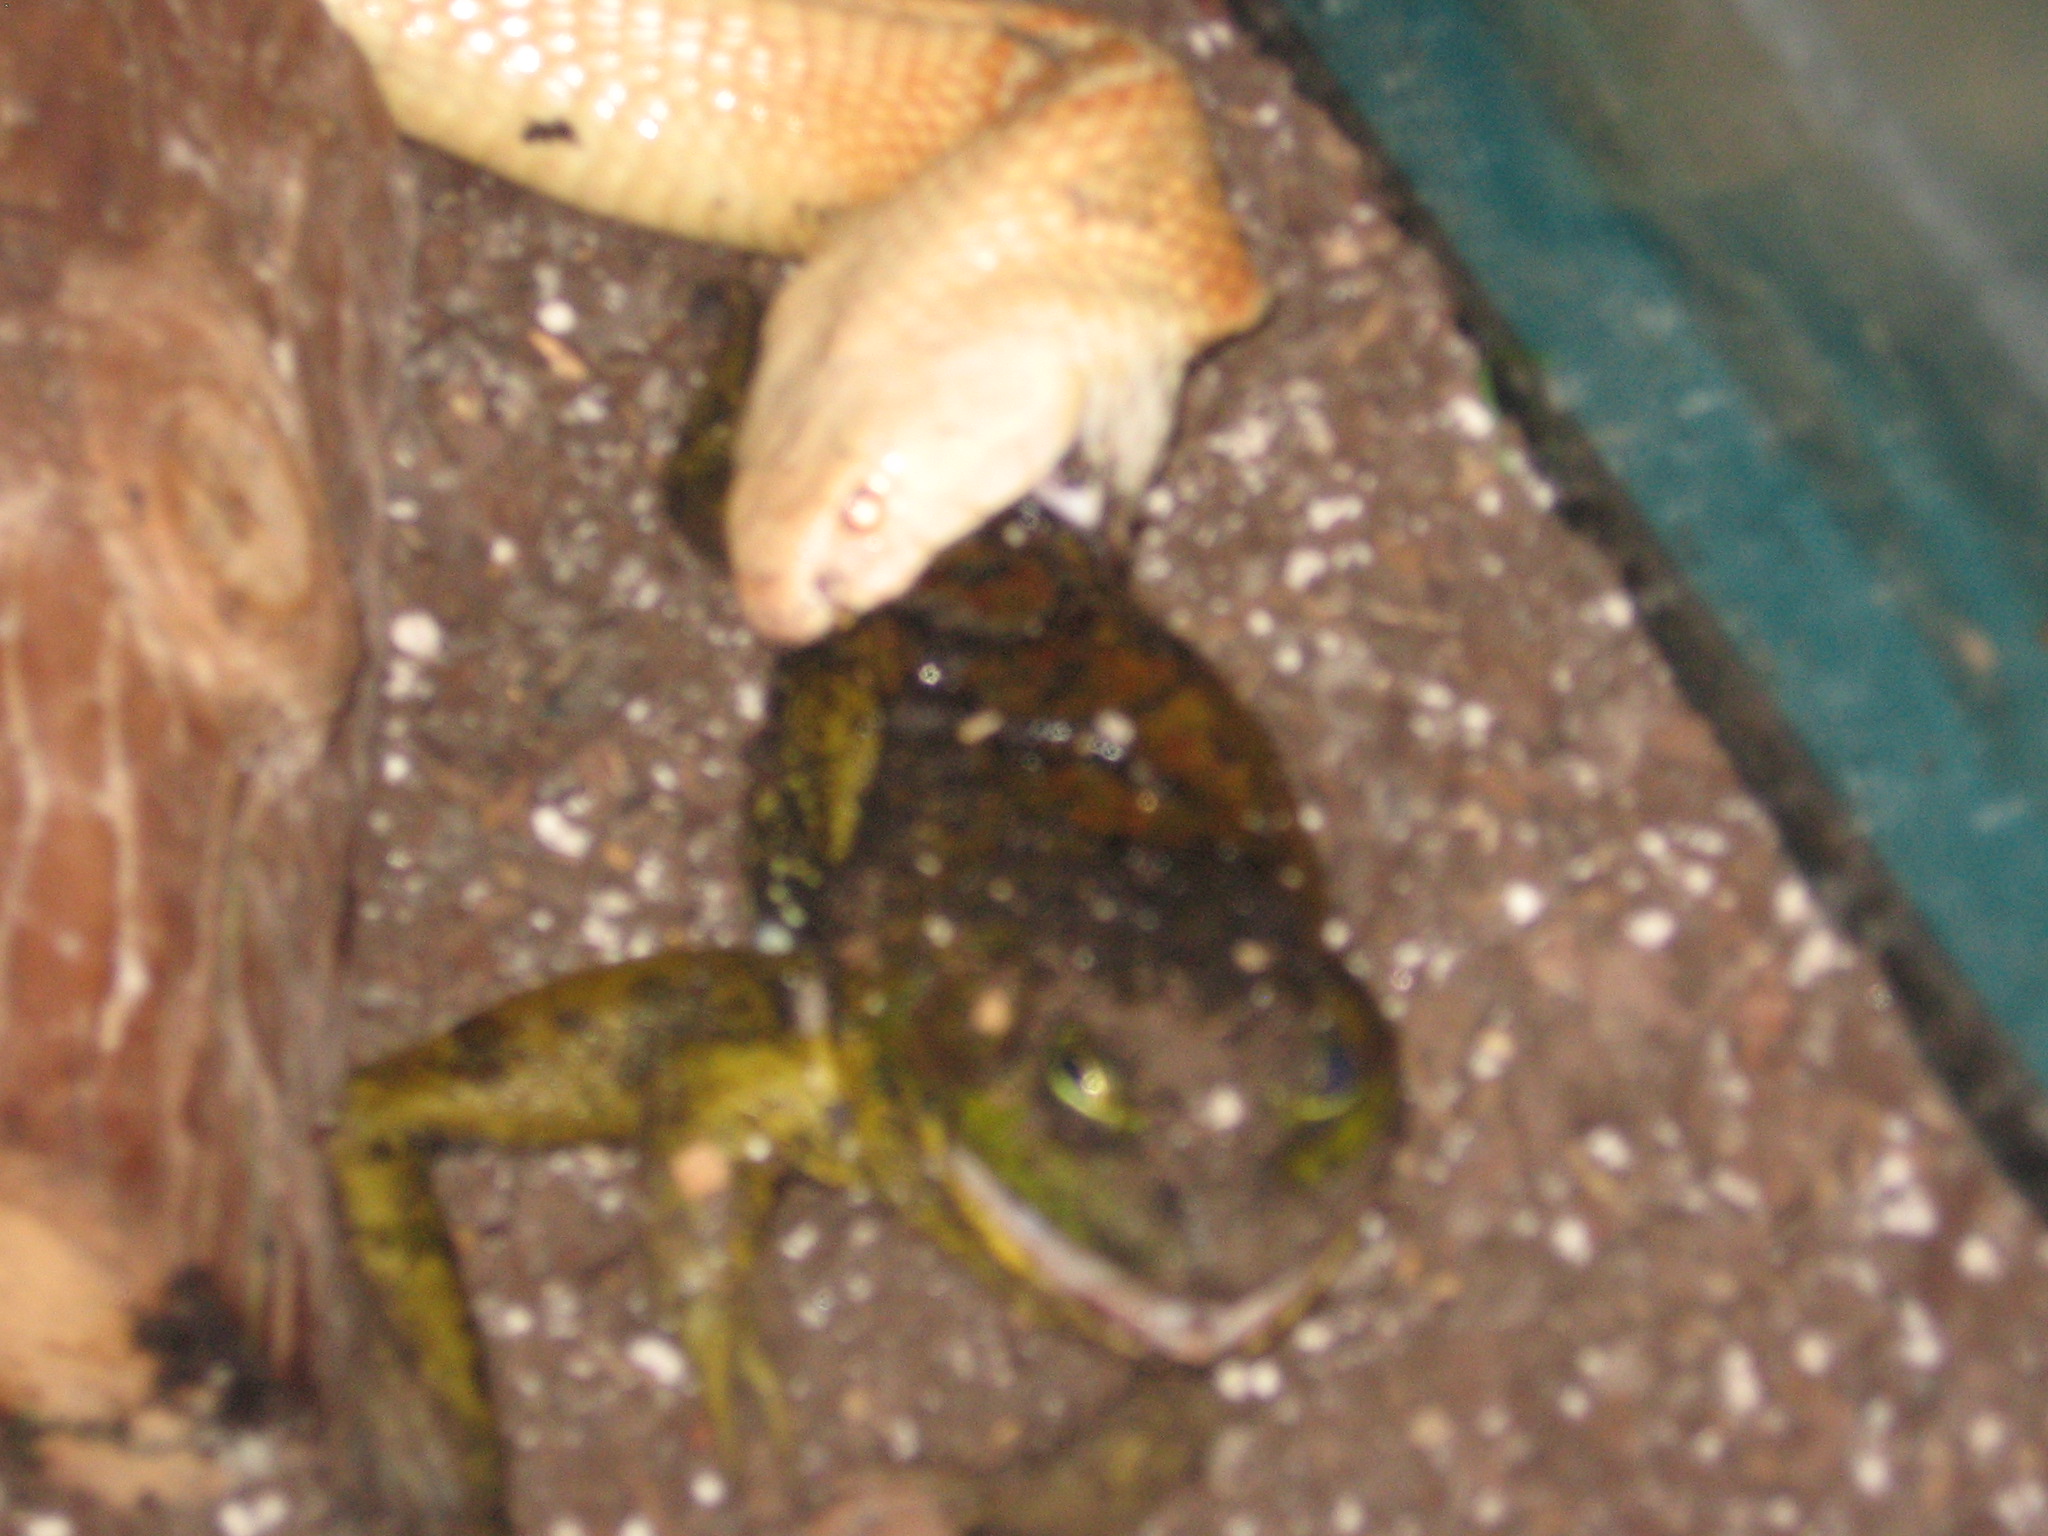 Cobra Eating Bullfrog 004.jpg [748 Kb]